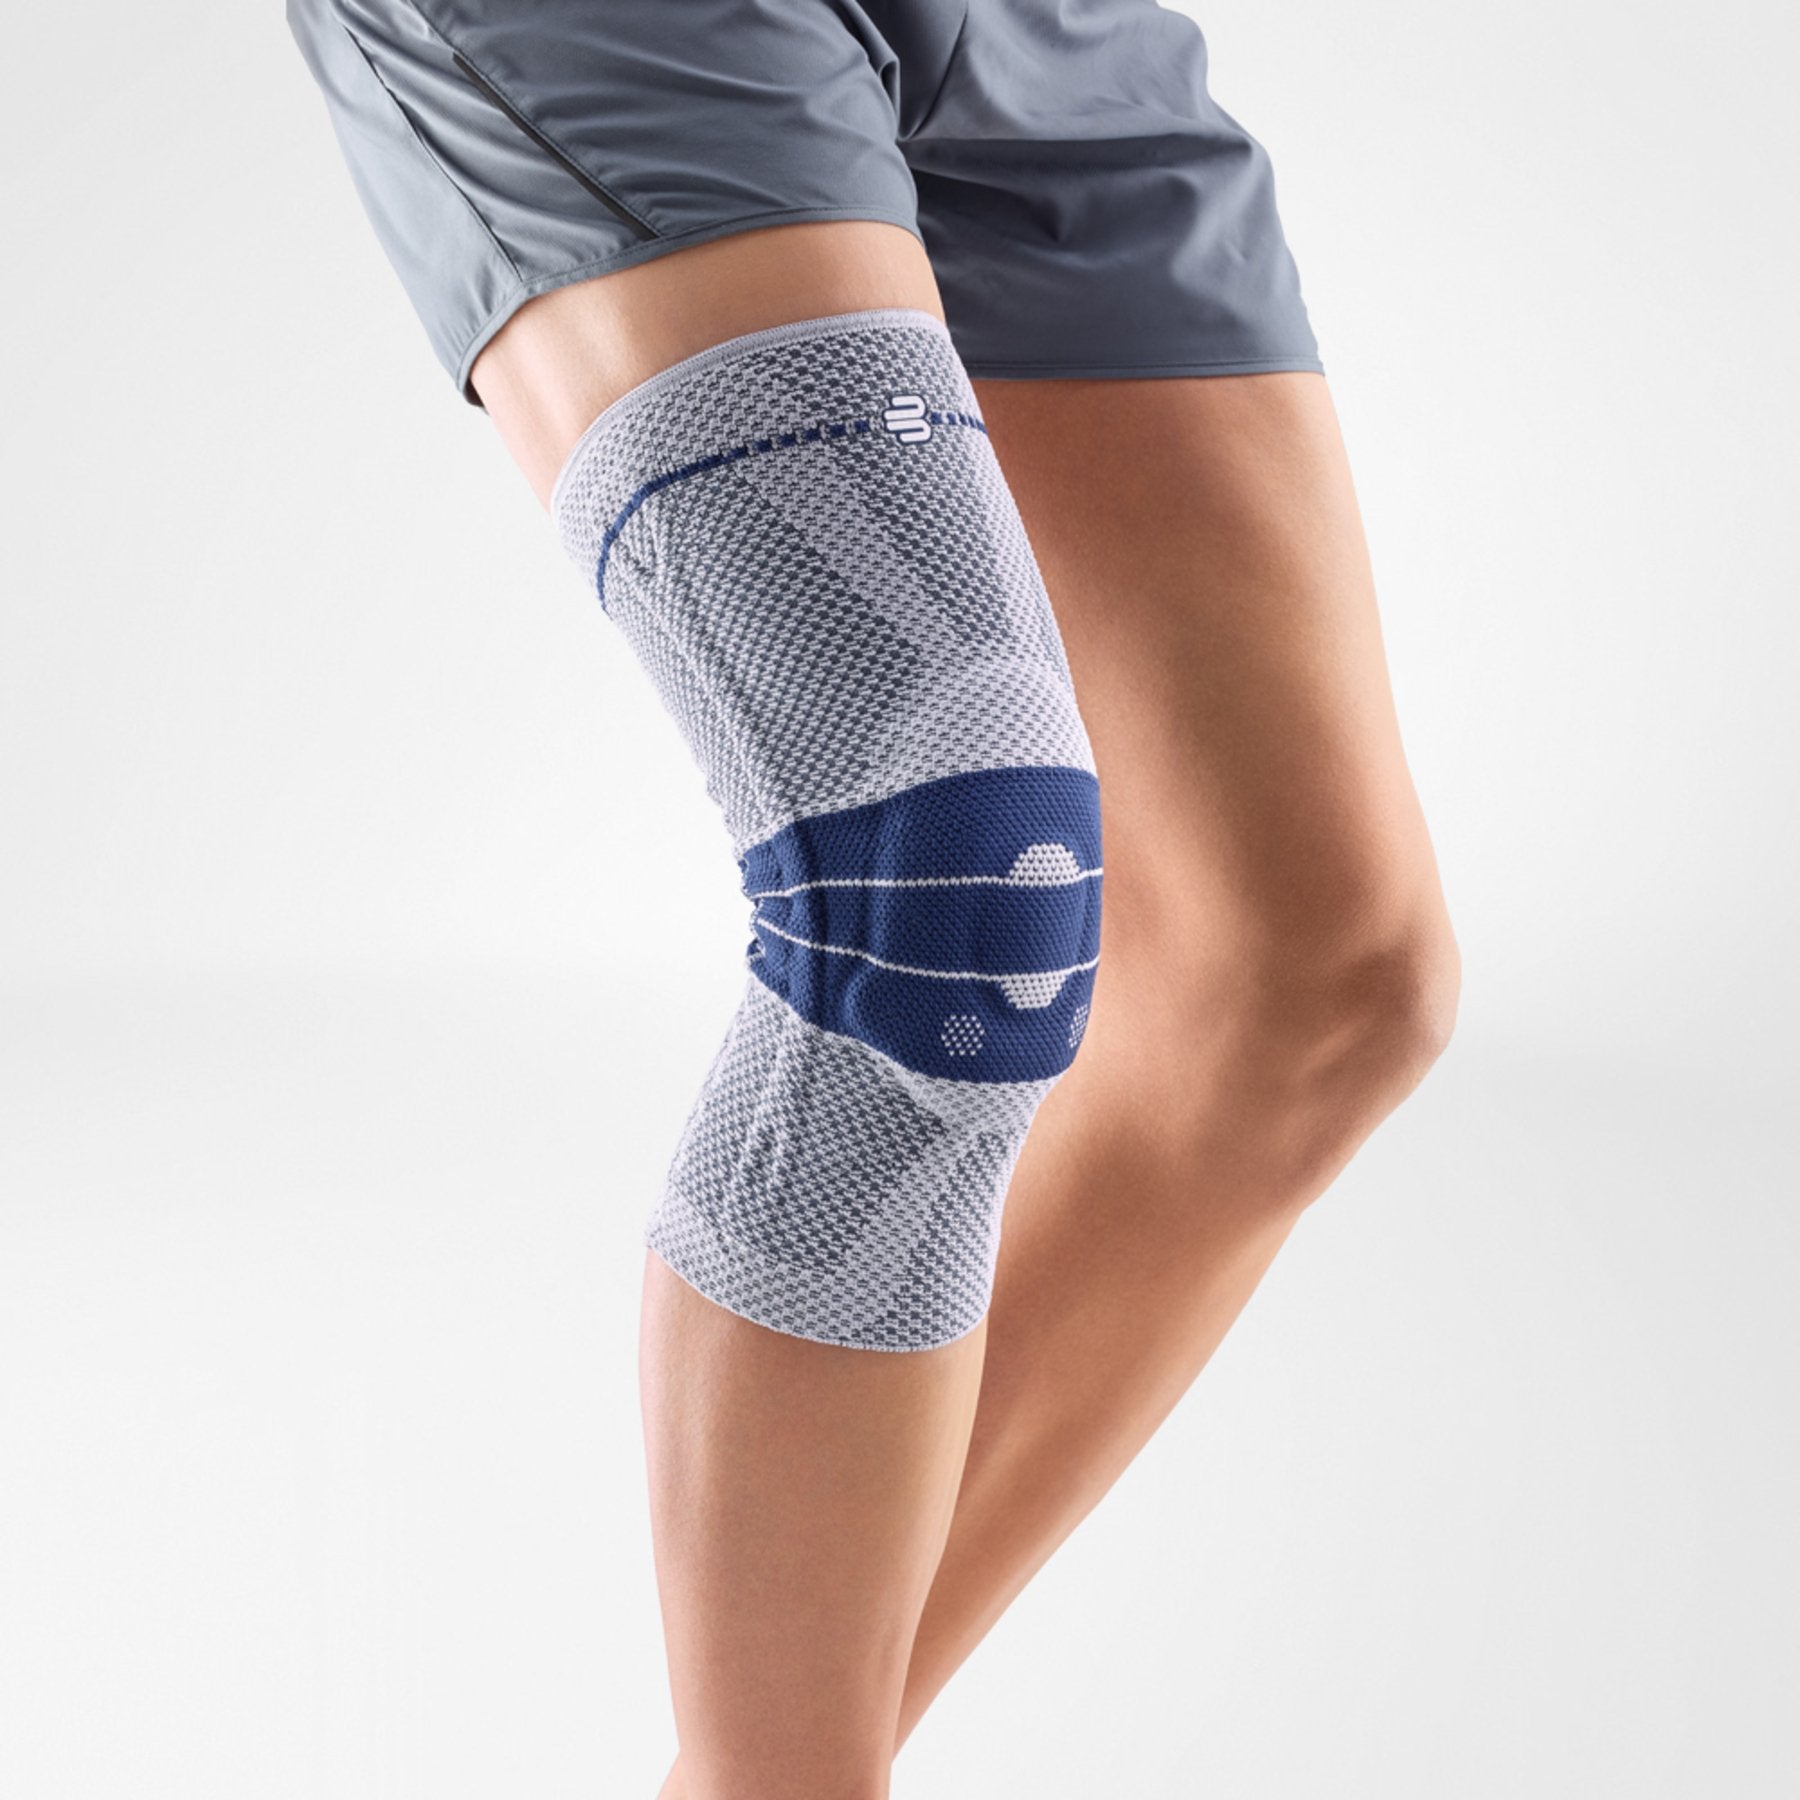 Bauerfeind GenuPoint®- Knee Support - Patellar Tendon Relief